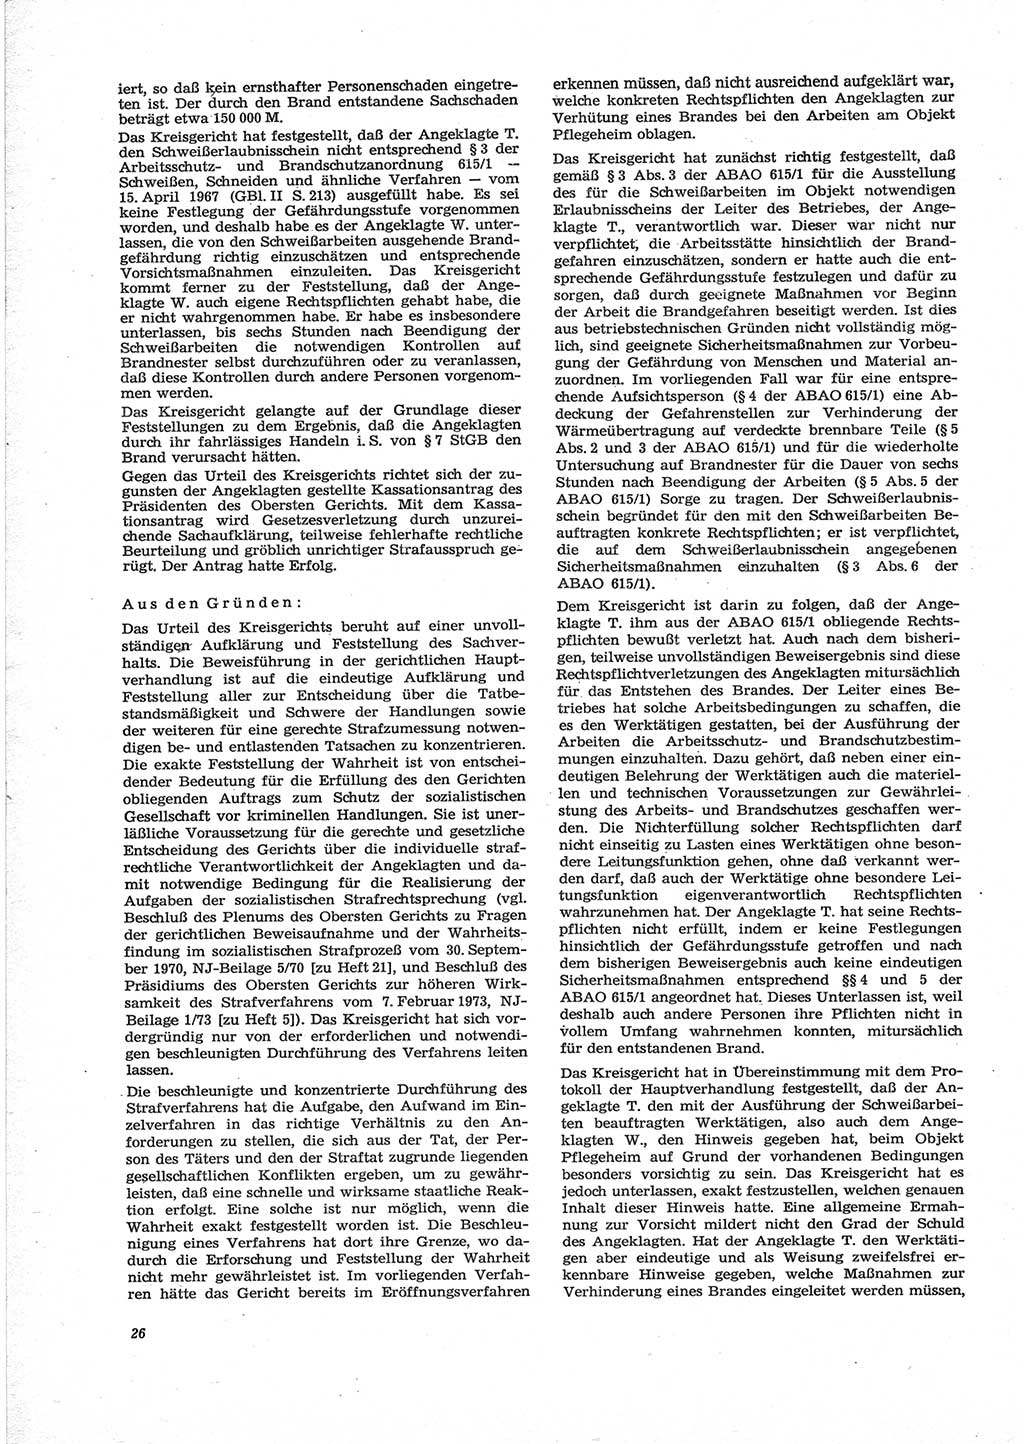 Neue Justiz (NJ), Zeitschrift für Recht und Rechtswissenschaft [Deutsche Demokratische Republik (DDR)], 28. Jahrgang 1974, Seite 26 (NJ DDR 1974, S. 26)